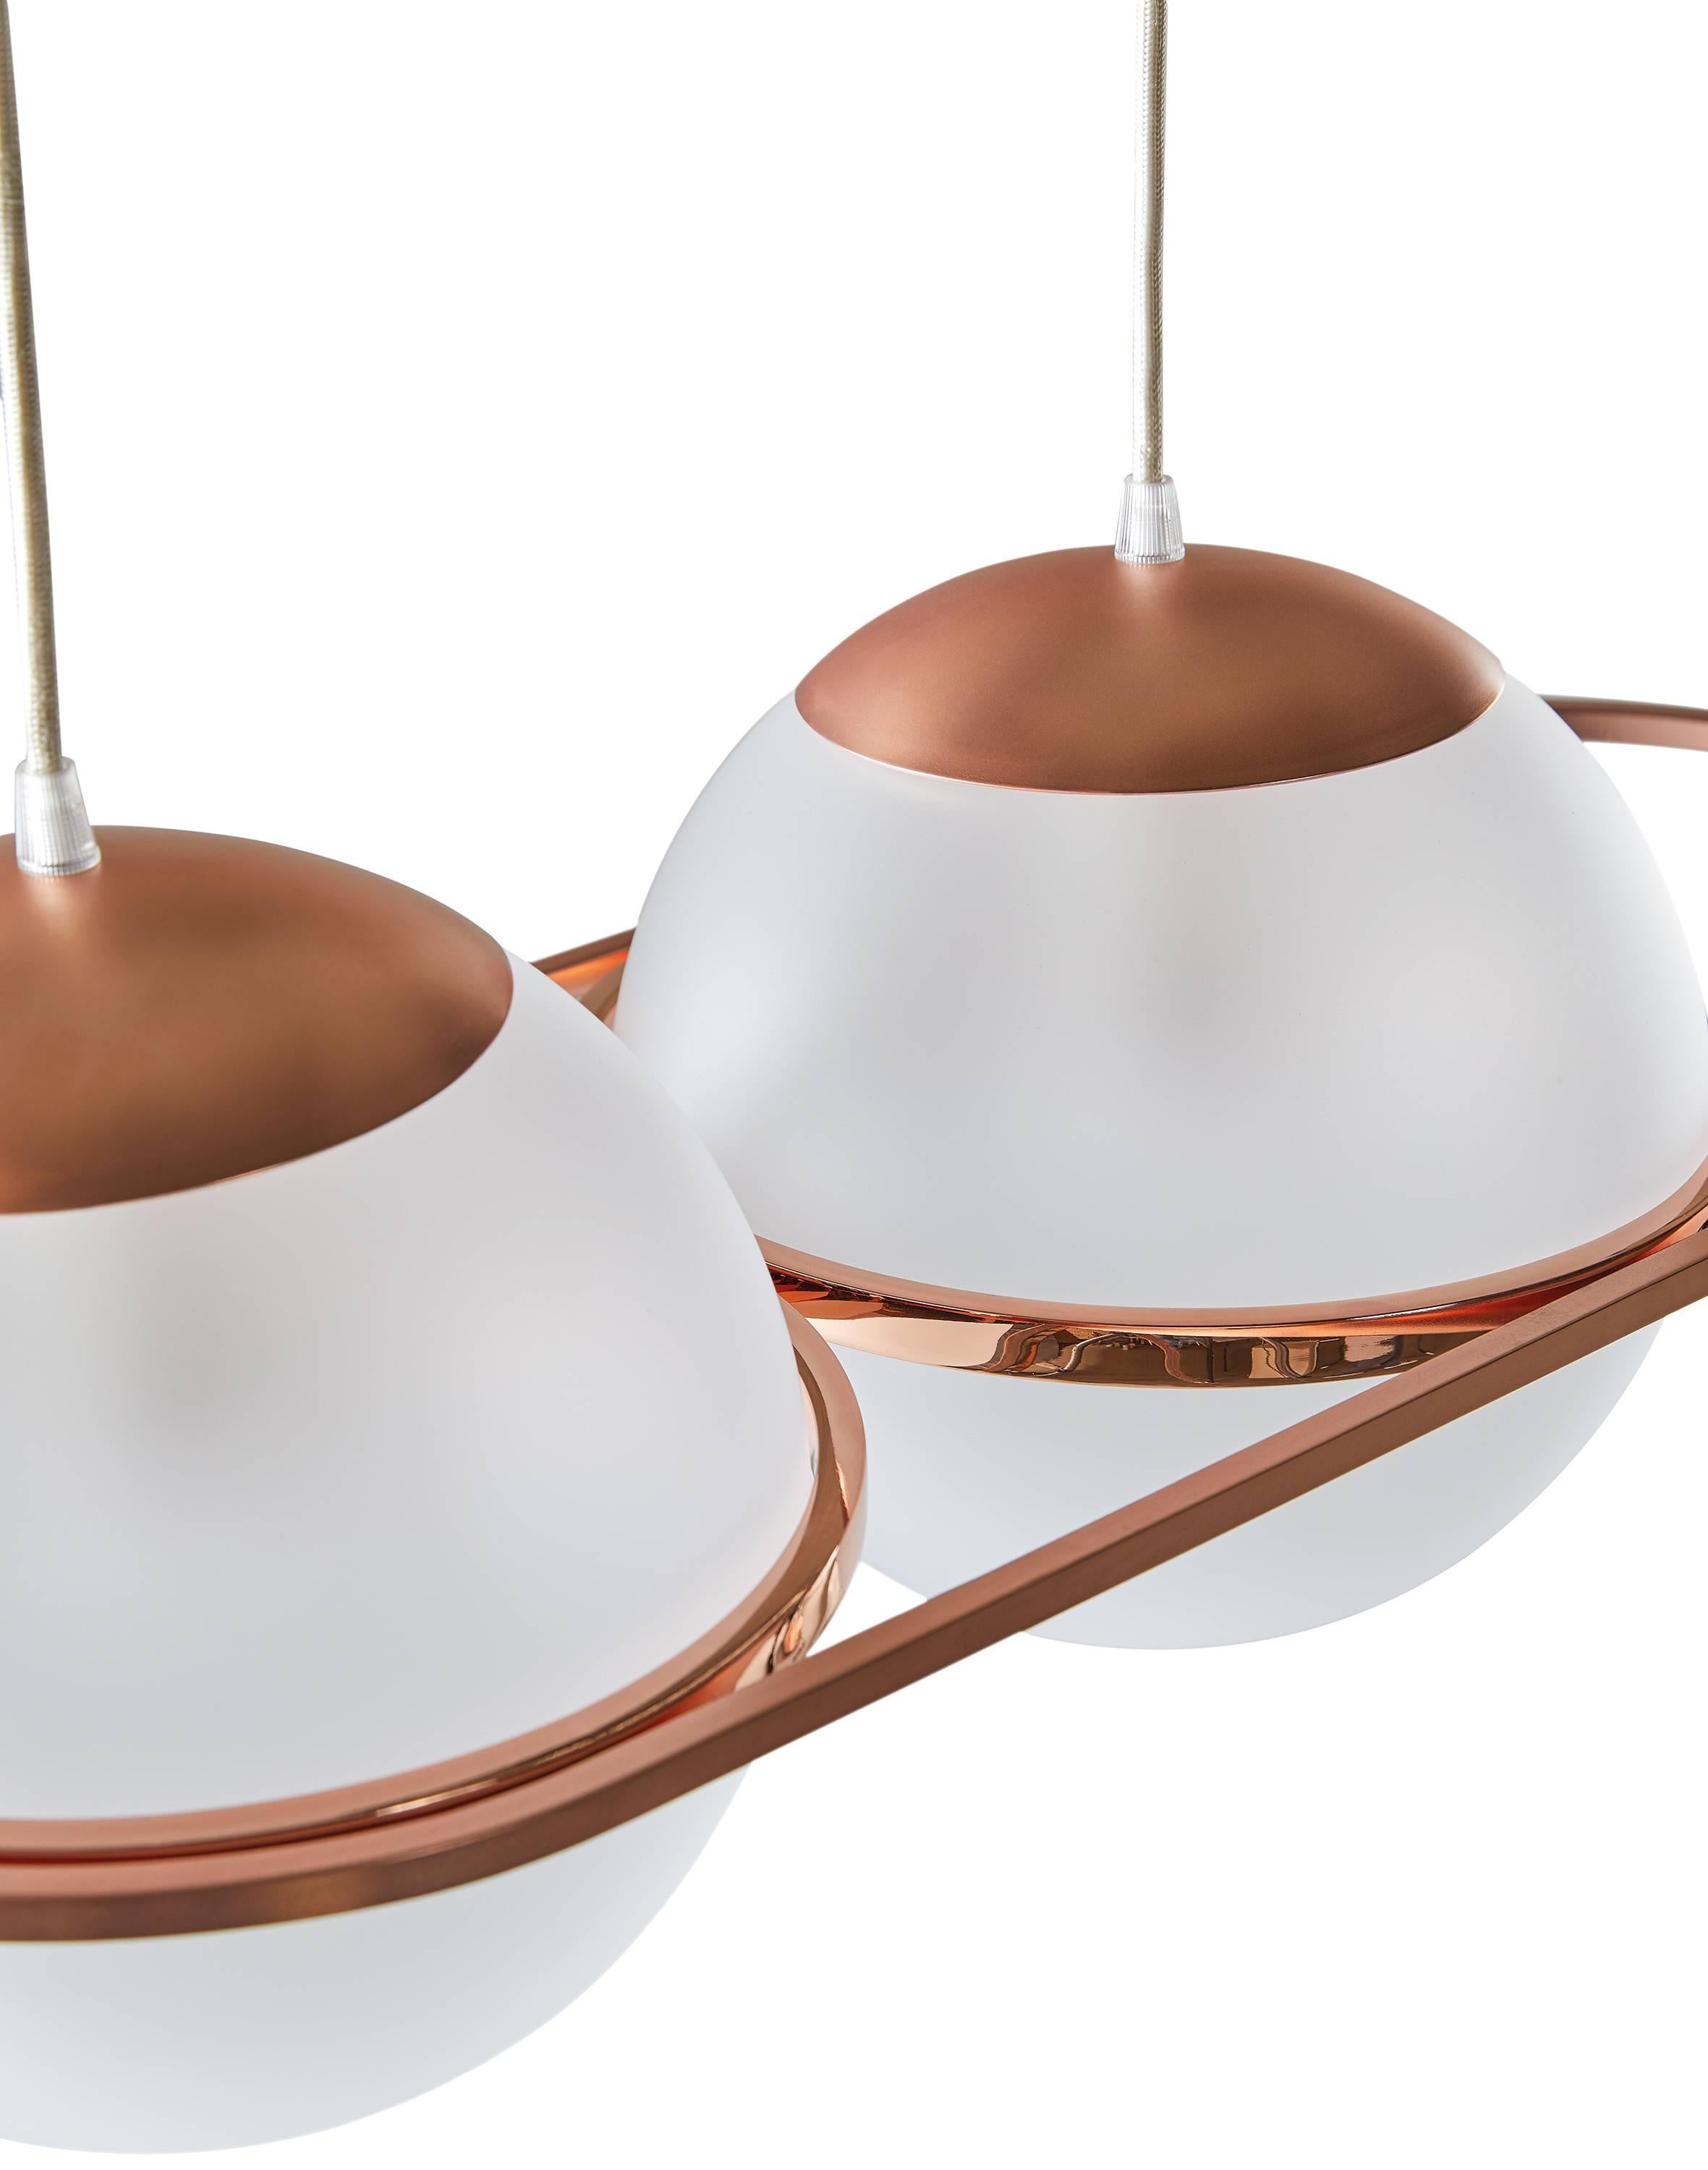 Deco Lamp von Federica Biasi für Mingardo fasst die Essenz des Produkts Mingardo zusammen: schlank, raffiniert und minimal. Eine kleine asymmetrische Geometrie zeichnet die strukturelle Begrenzung. Eine ausdrückliche Hommage an Gino Sarfatti, in